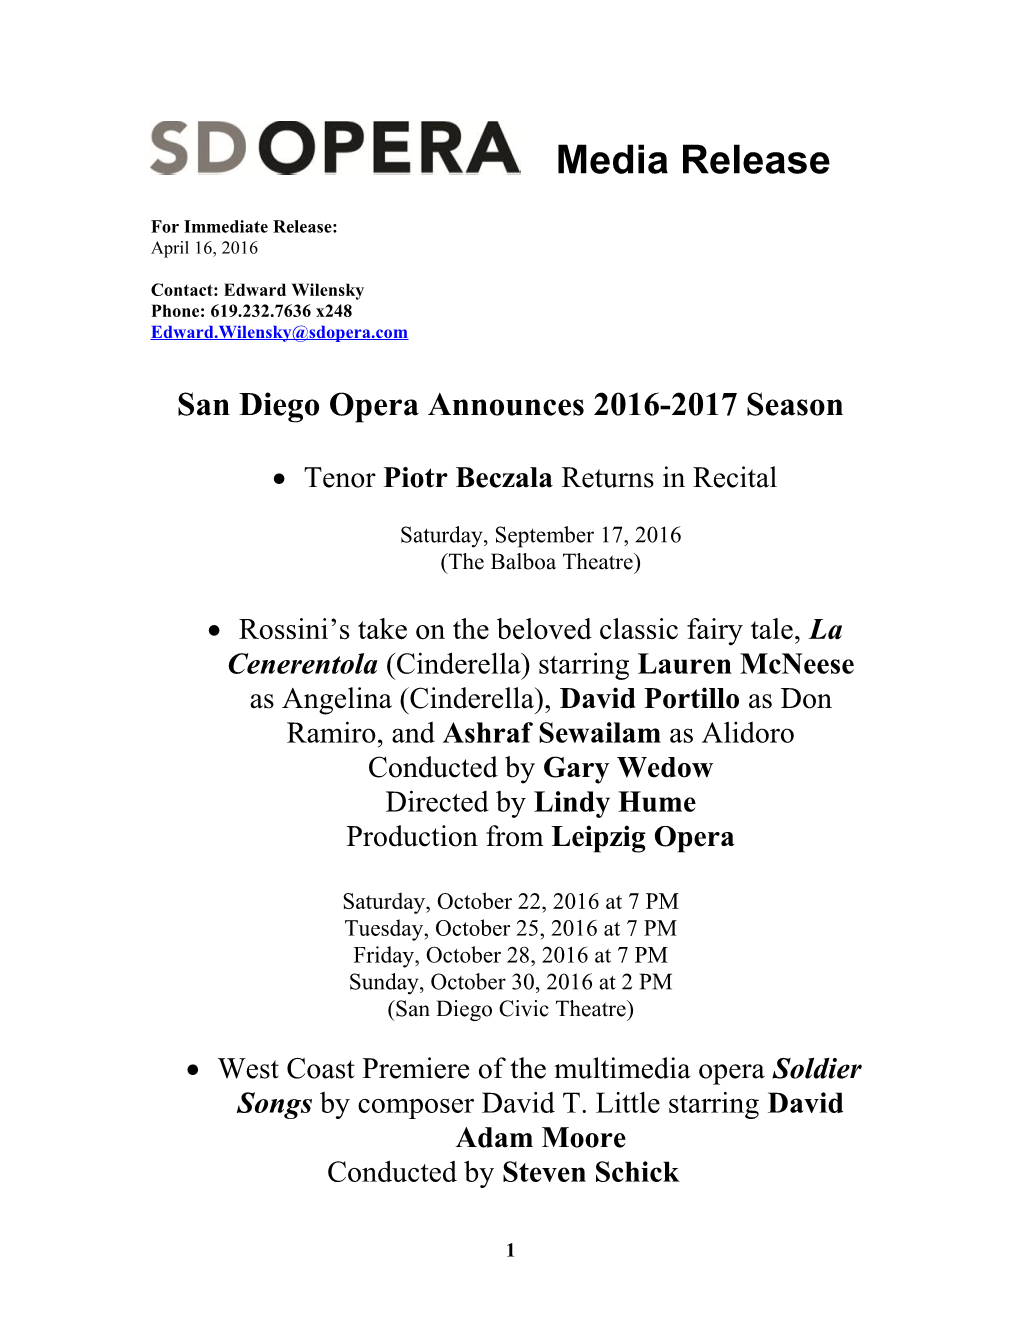 San Diego Opera Announces 2016-2017 Season